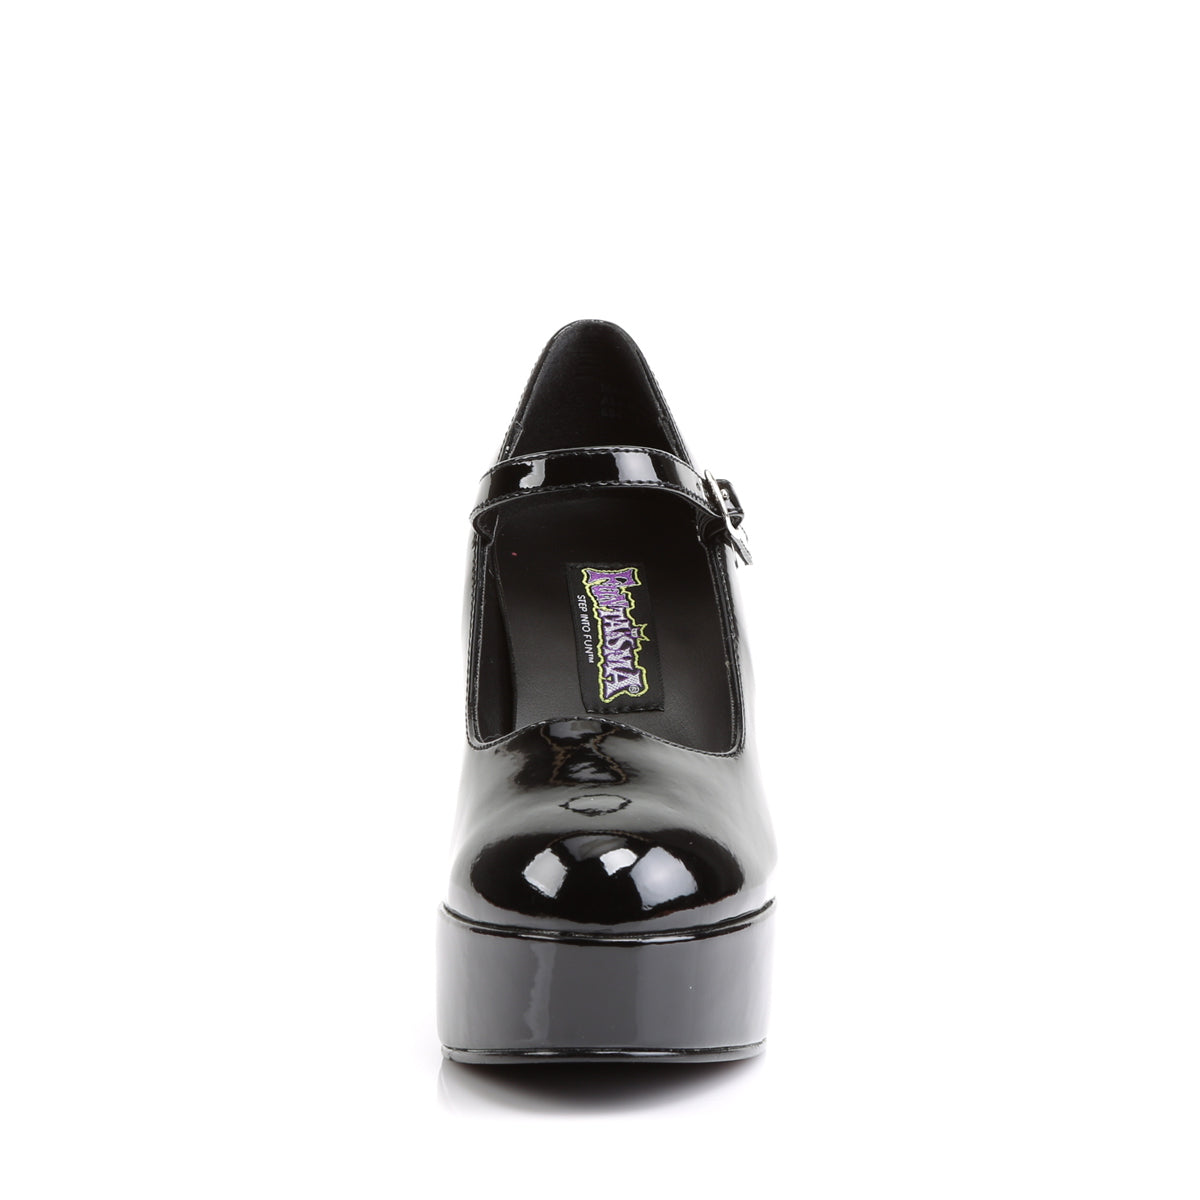 MARYJANE-50 Funtasma Fantasy Black Patent Women's Shoes [Fancy Dress Footwear]